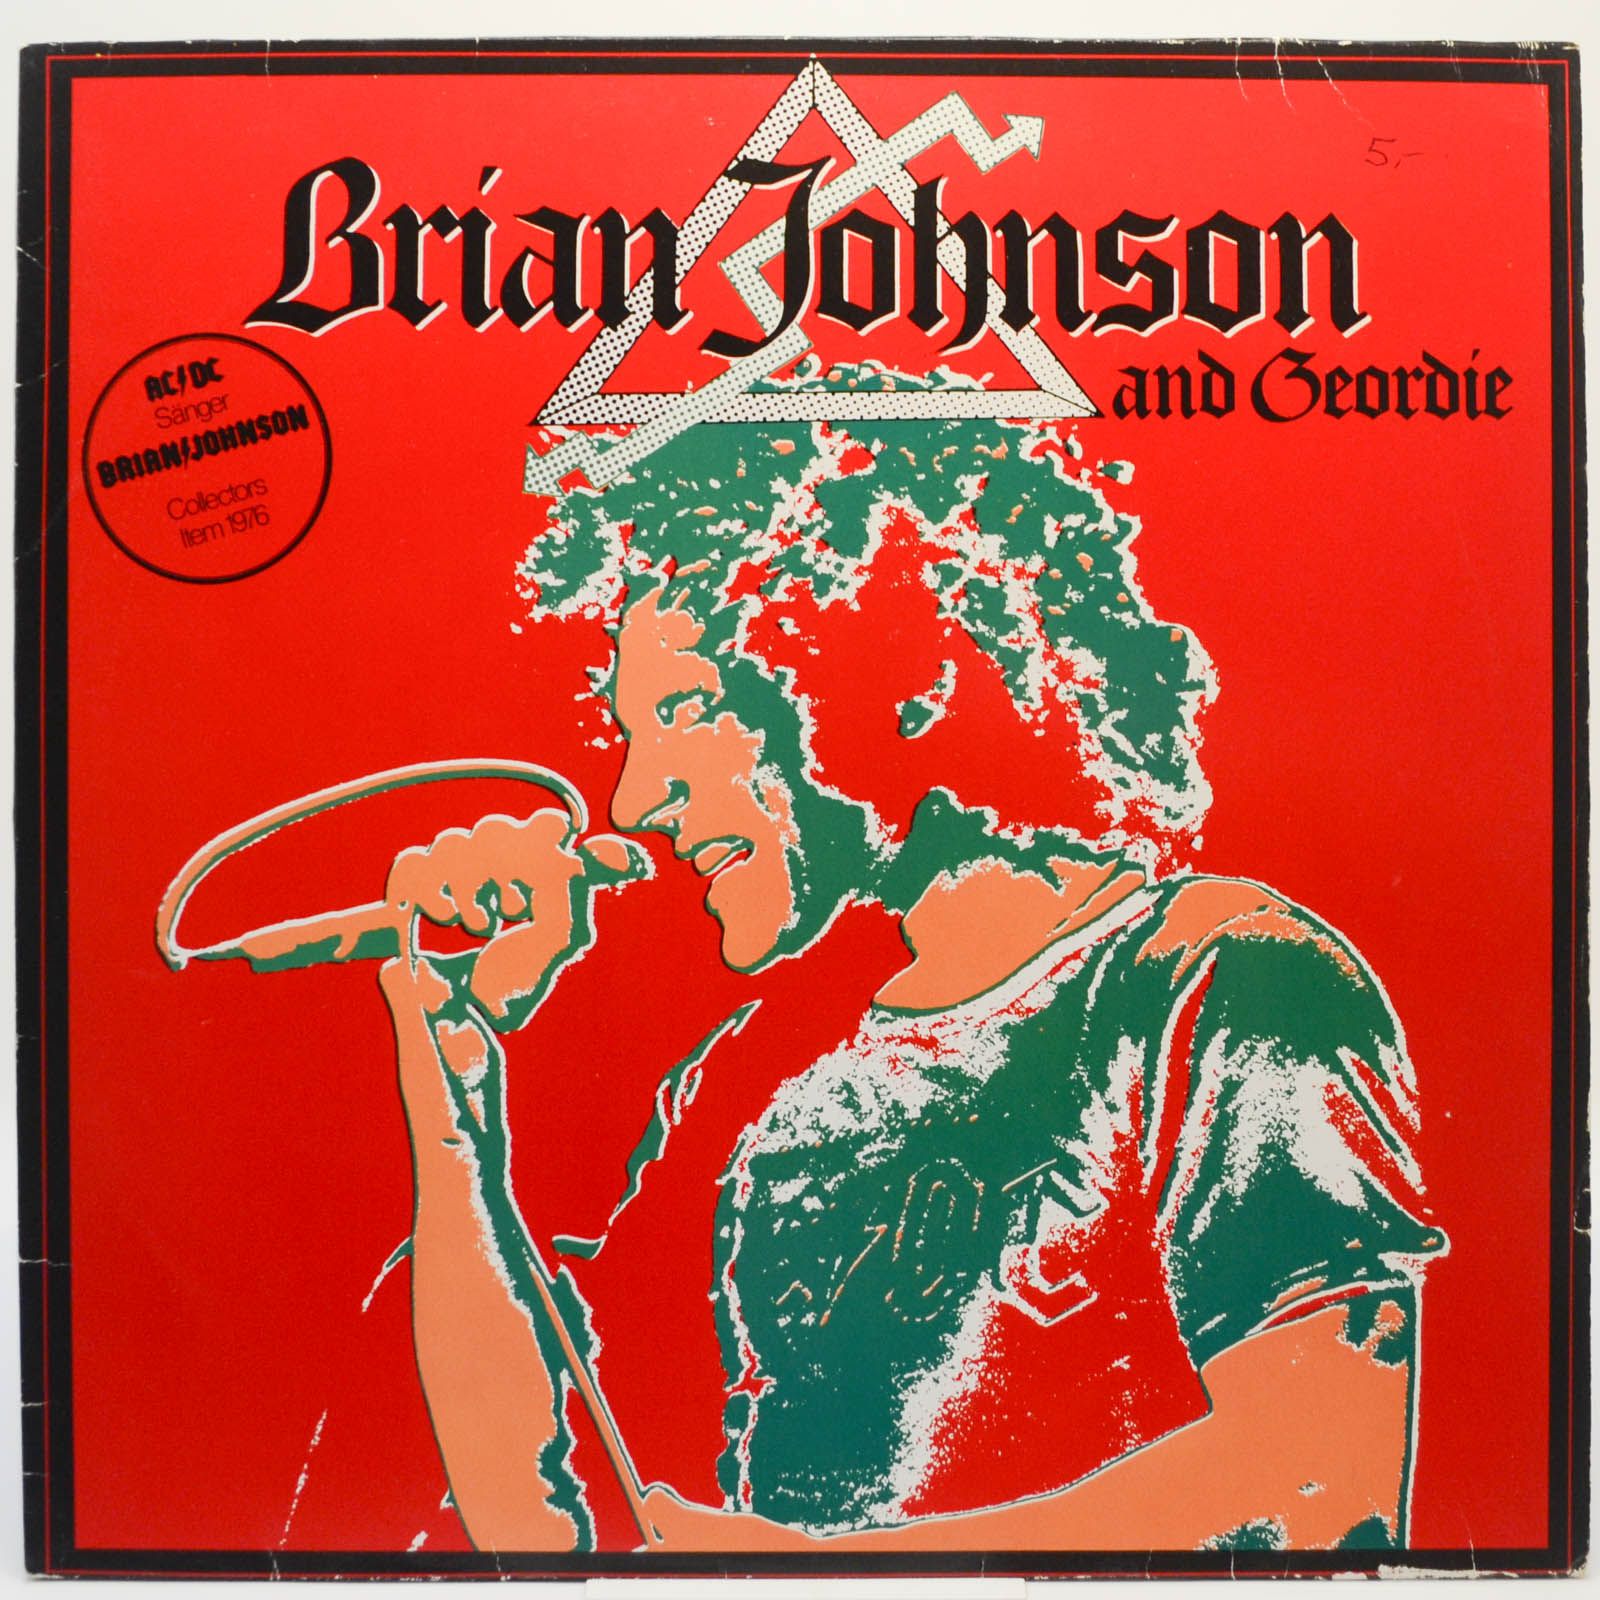 Brian Johnson And Geordie — Brian Johnson And Geordie, 1981